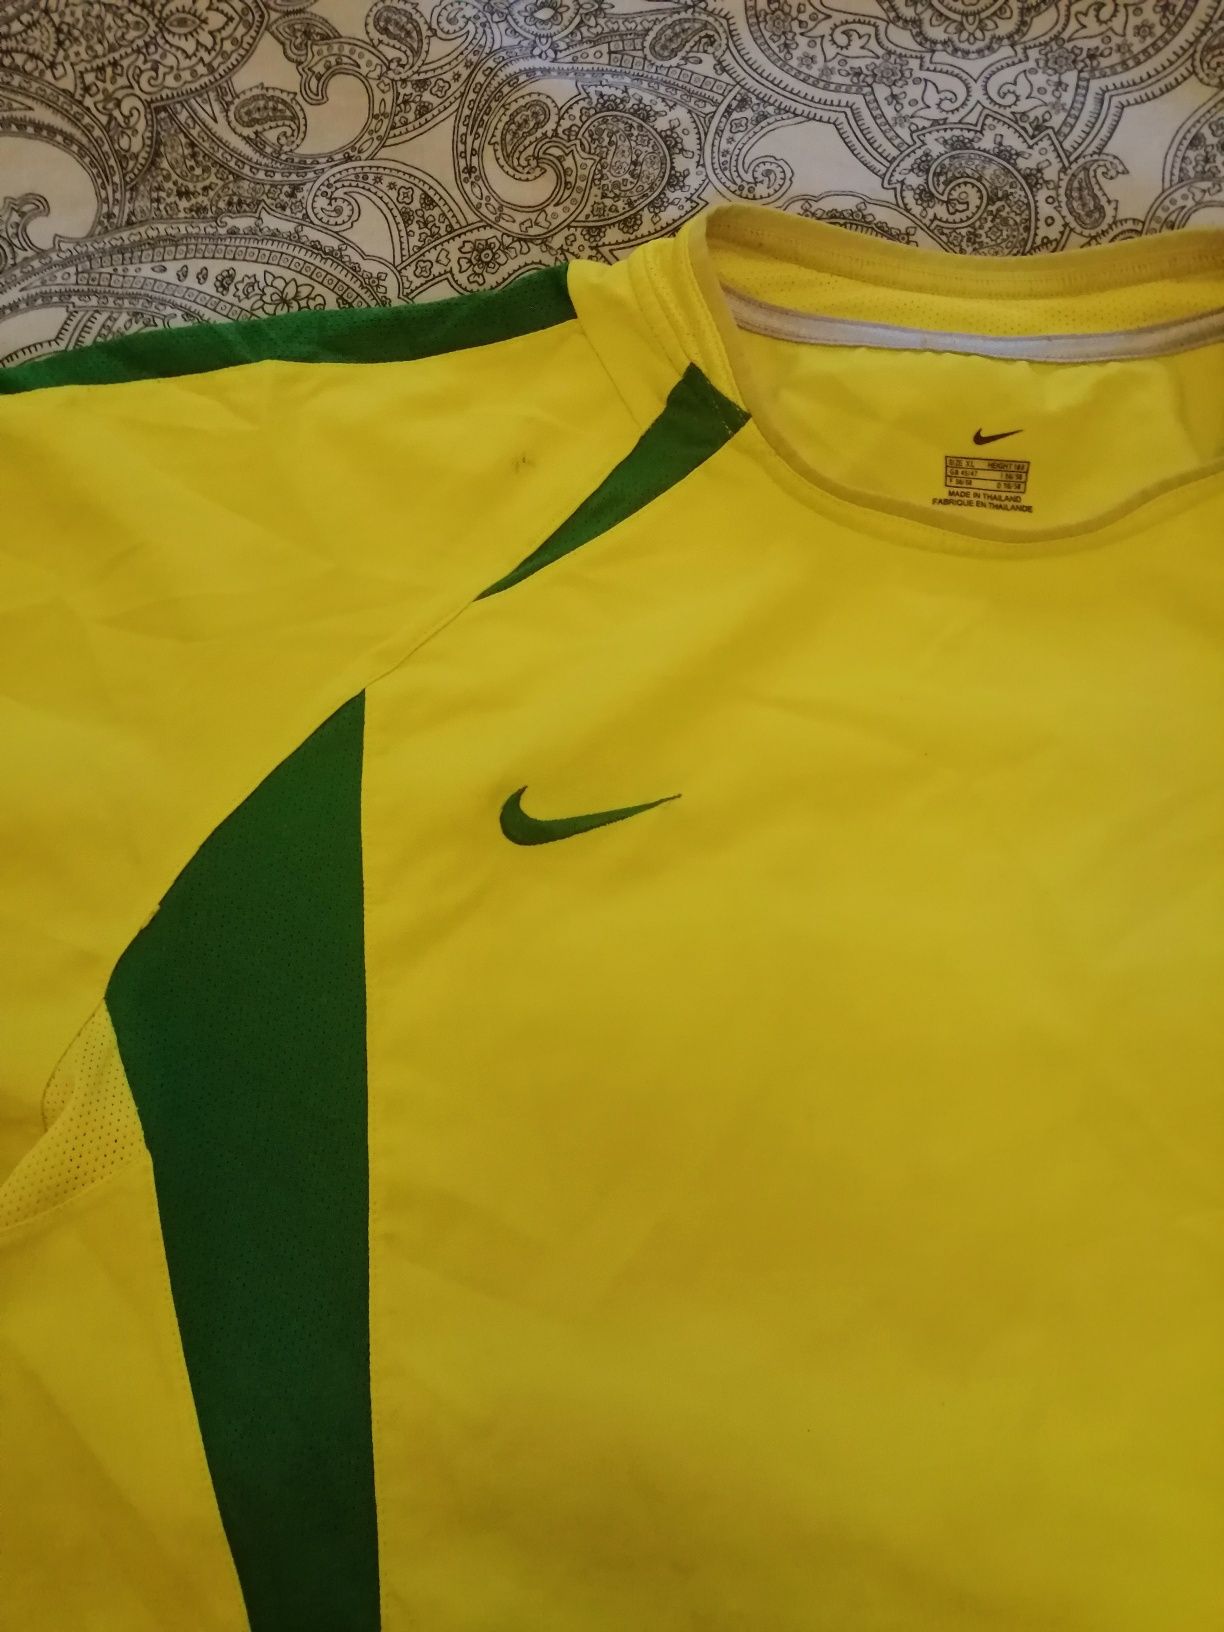 Koszulka  piłkarska CBF Brasil. Oryginał.